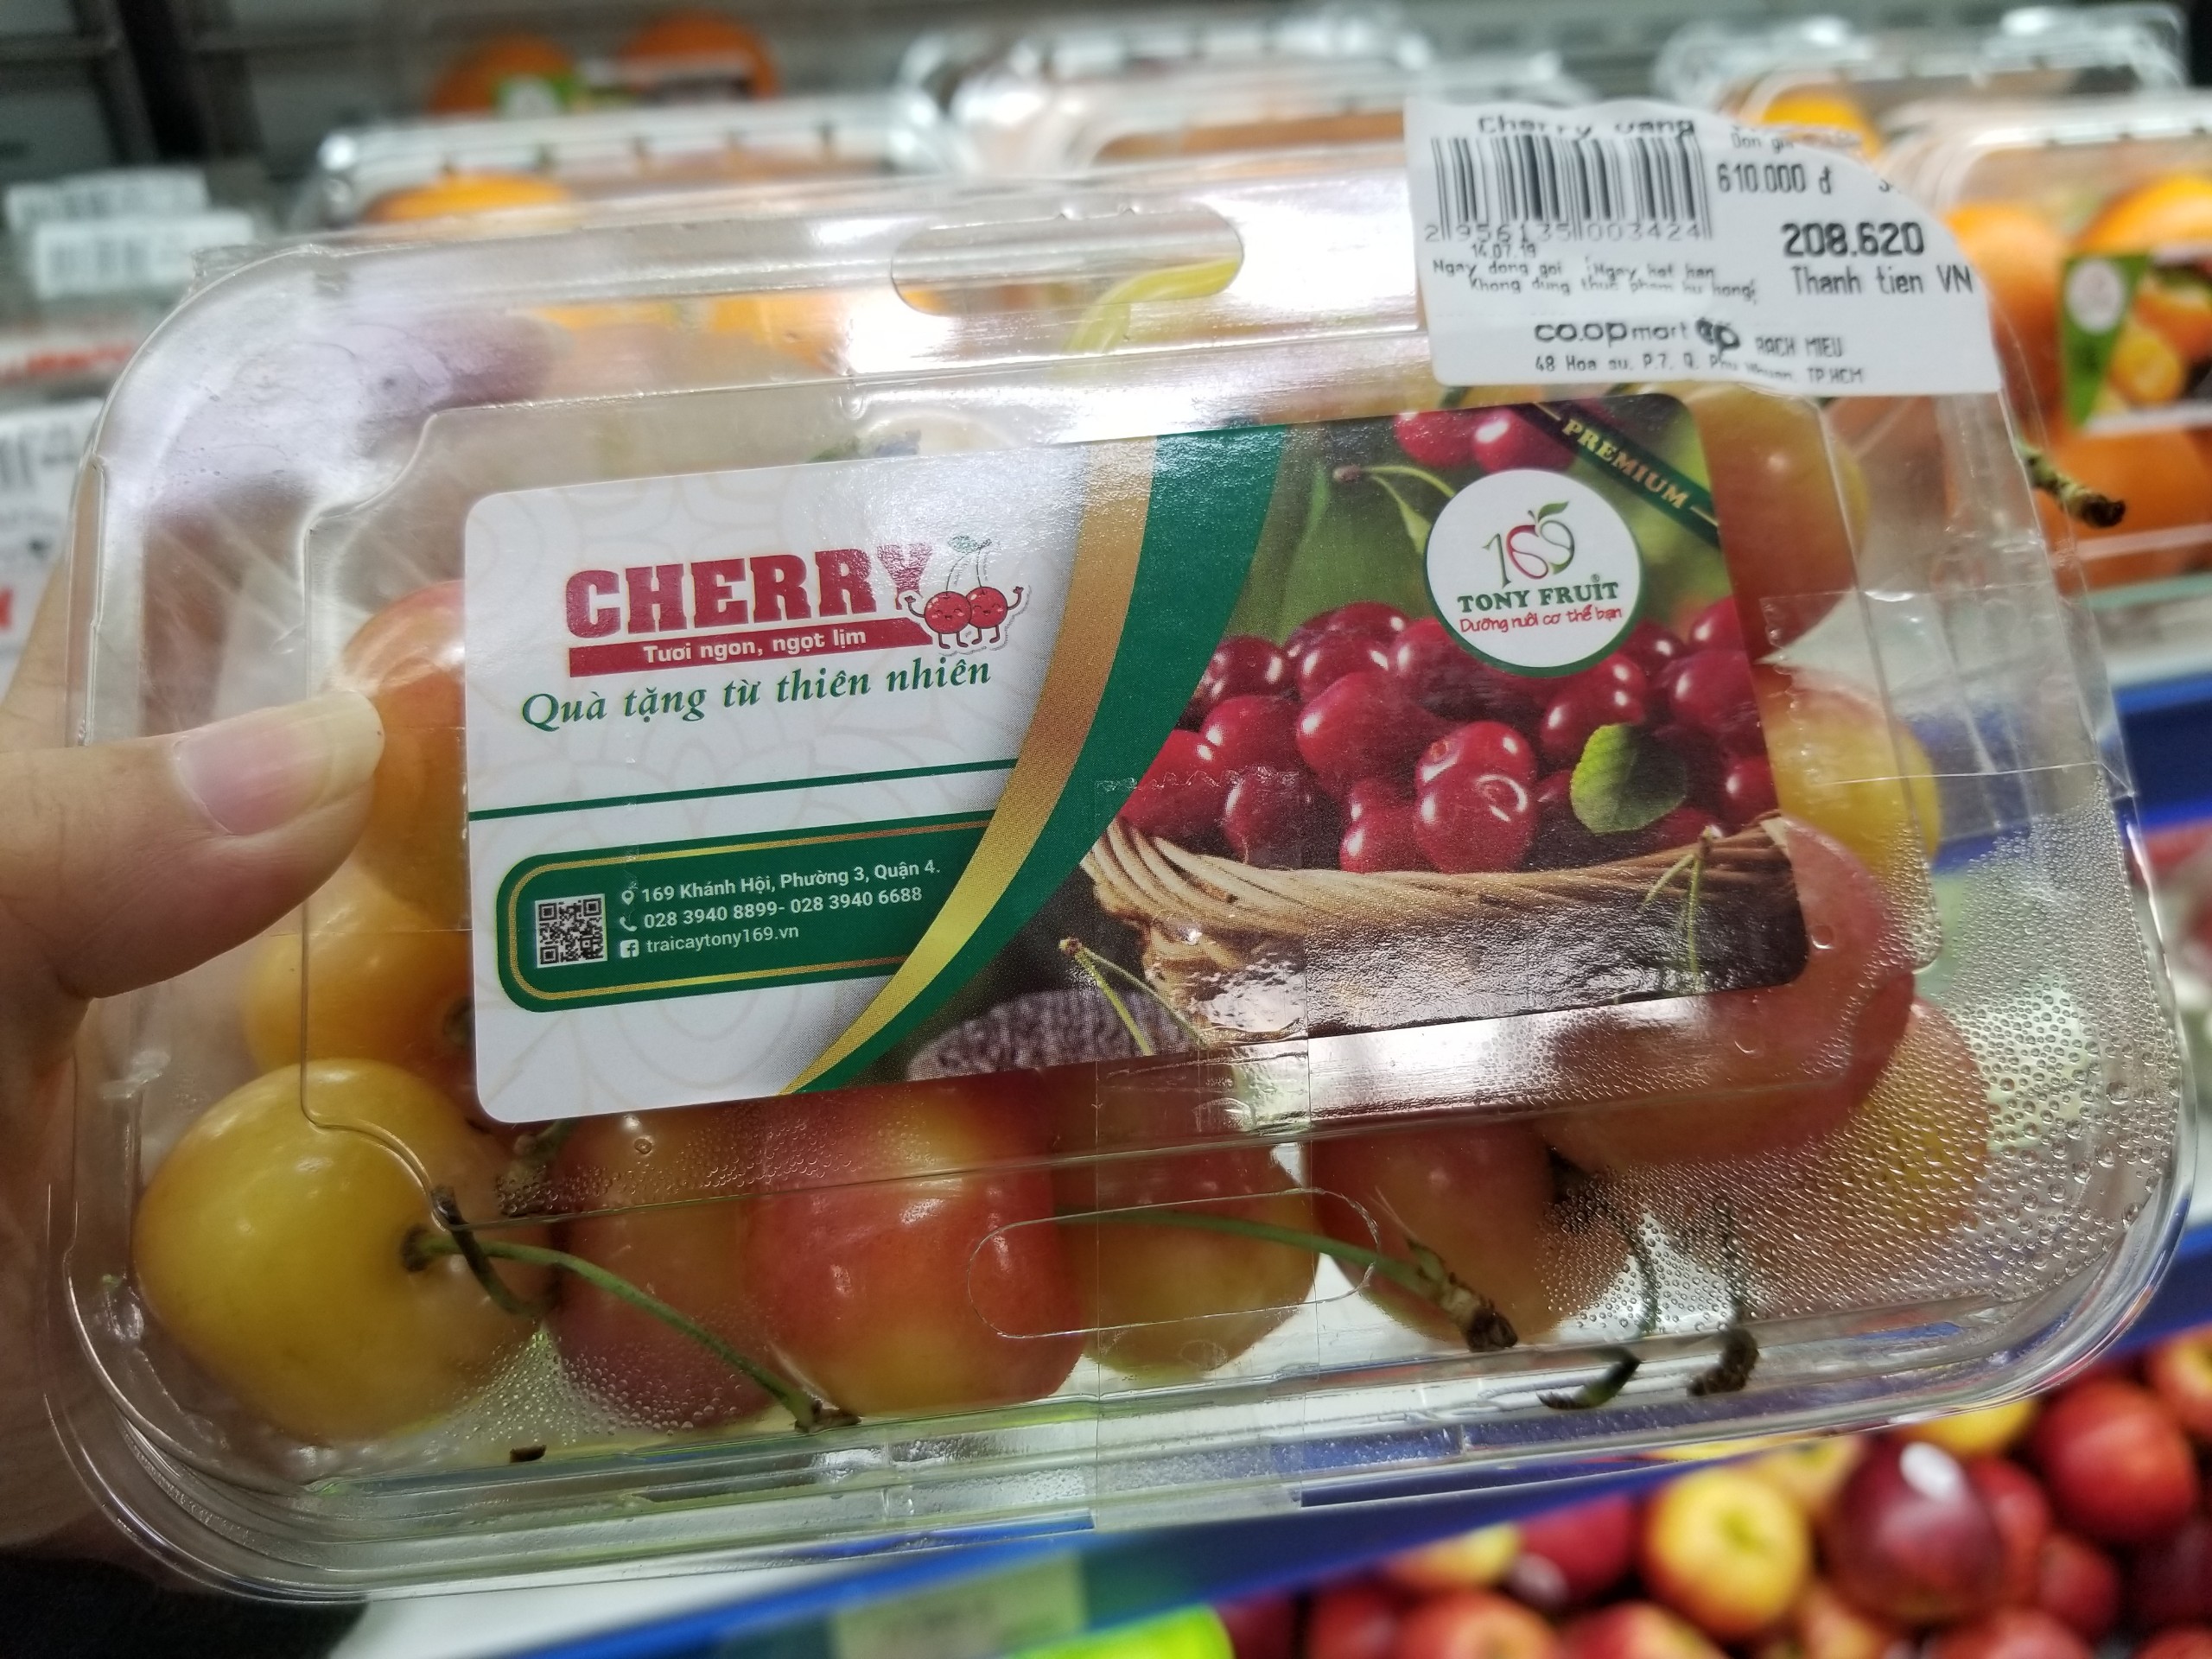 Ngoài loại cherry đỏ quen thuộc, còn có loại cherry màu vàng đỏ được bán với giá 610 ngàn đồng/kg. Ảnh: PV